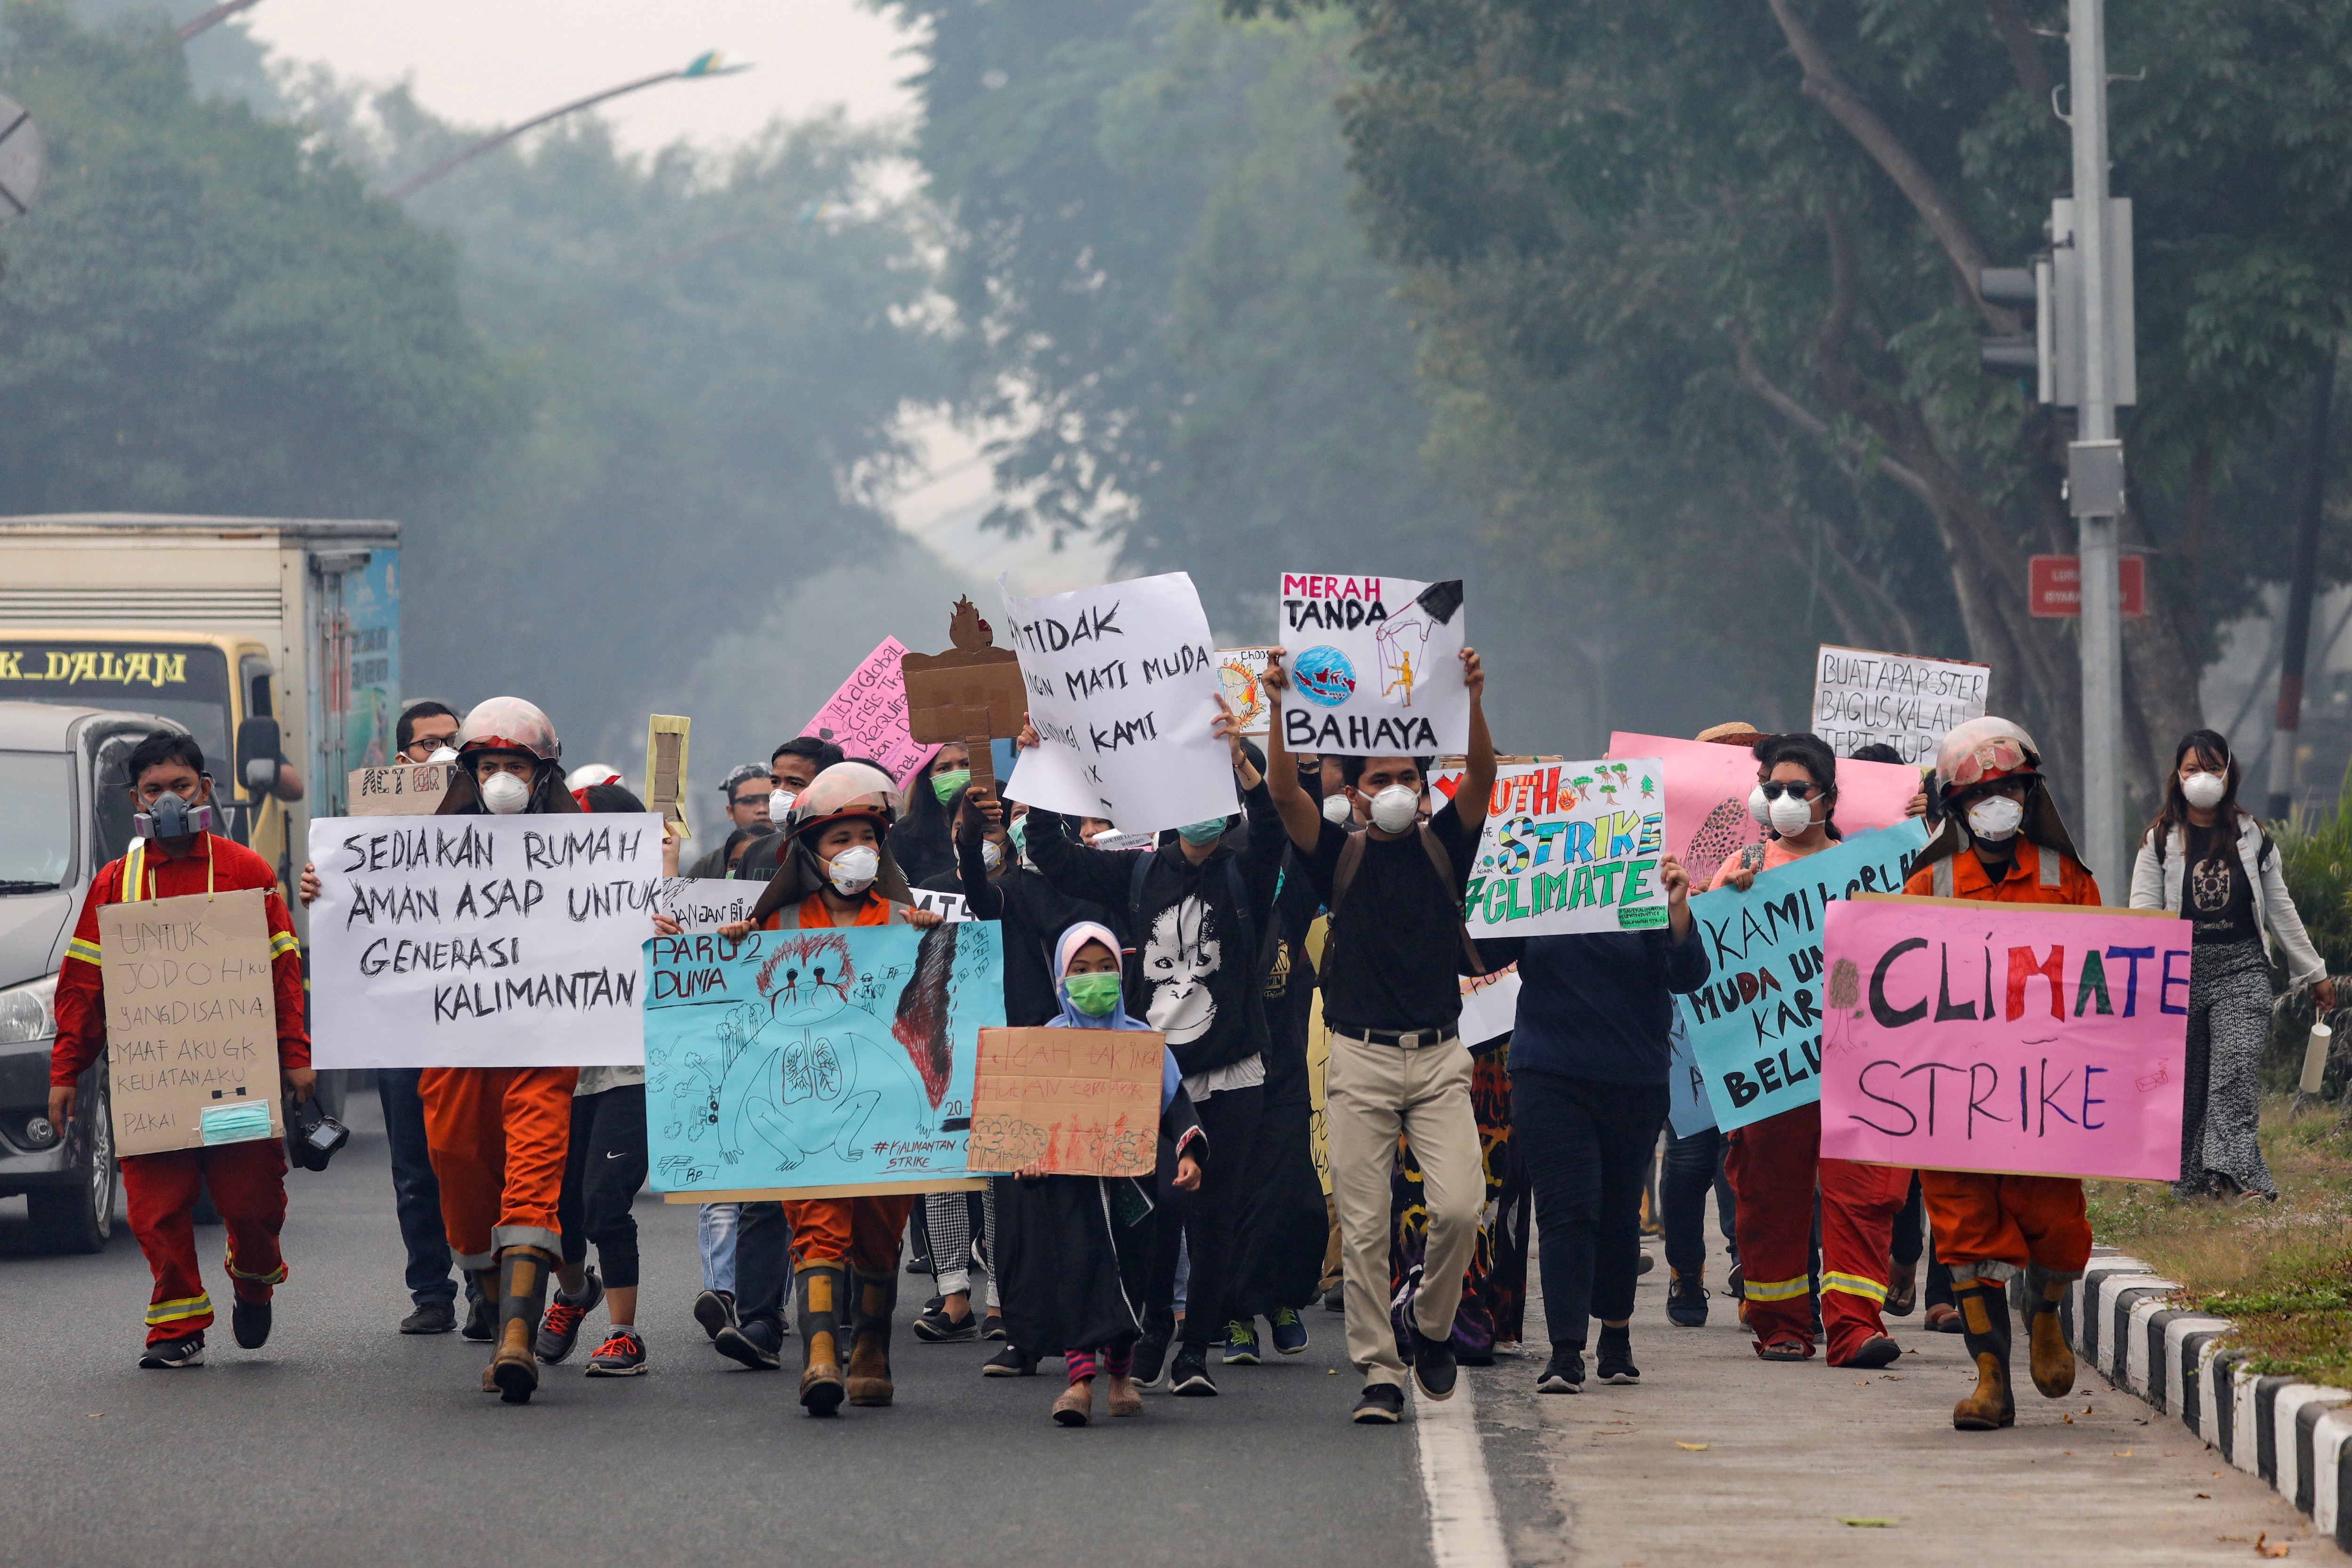 Jóvenes caminan con pancartas durante una manifestación de la huelga climática mundial mientras el smog cubre la ciudad debido a los incendios forestales en Palangka Raya, provincia de Kalimantan Central, Indonesia, el 20 de septiembre de 2019. REUTERS/Willy Kurniawan